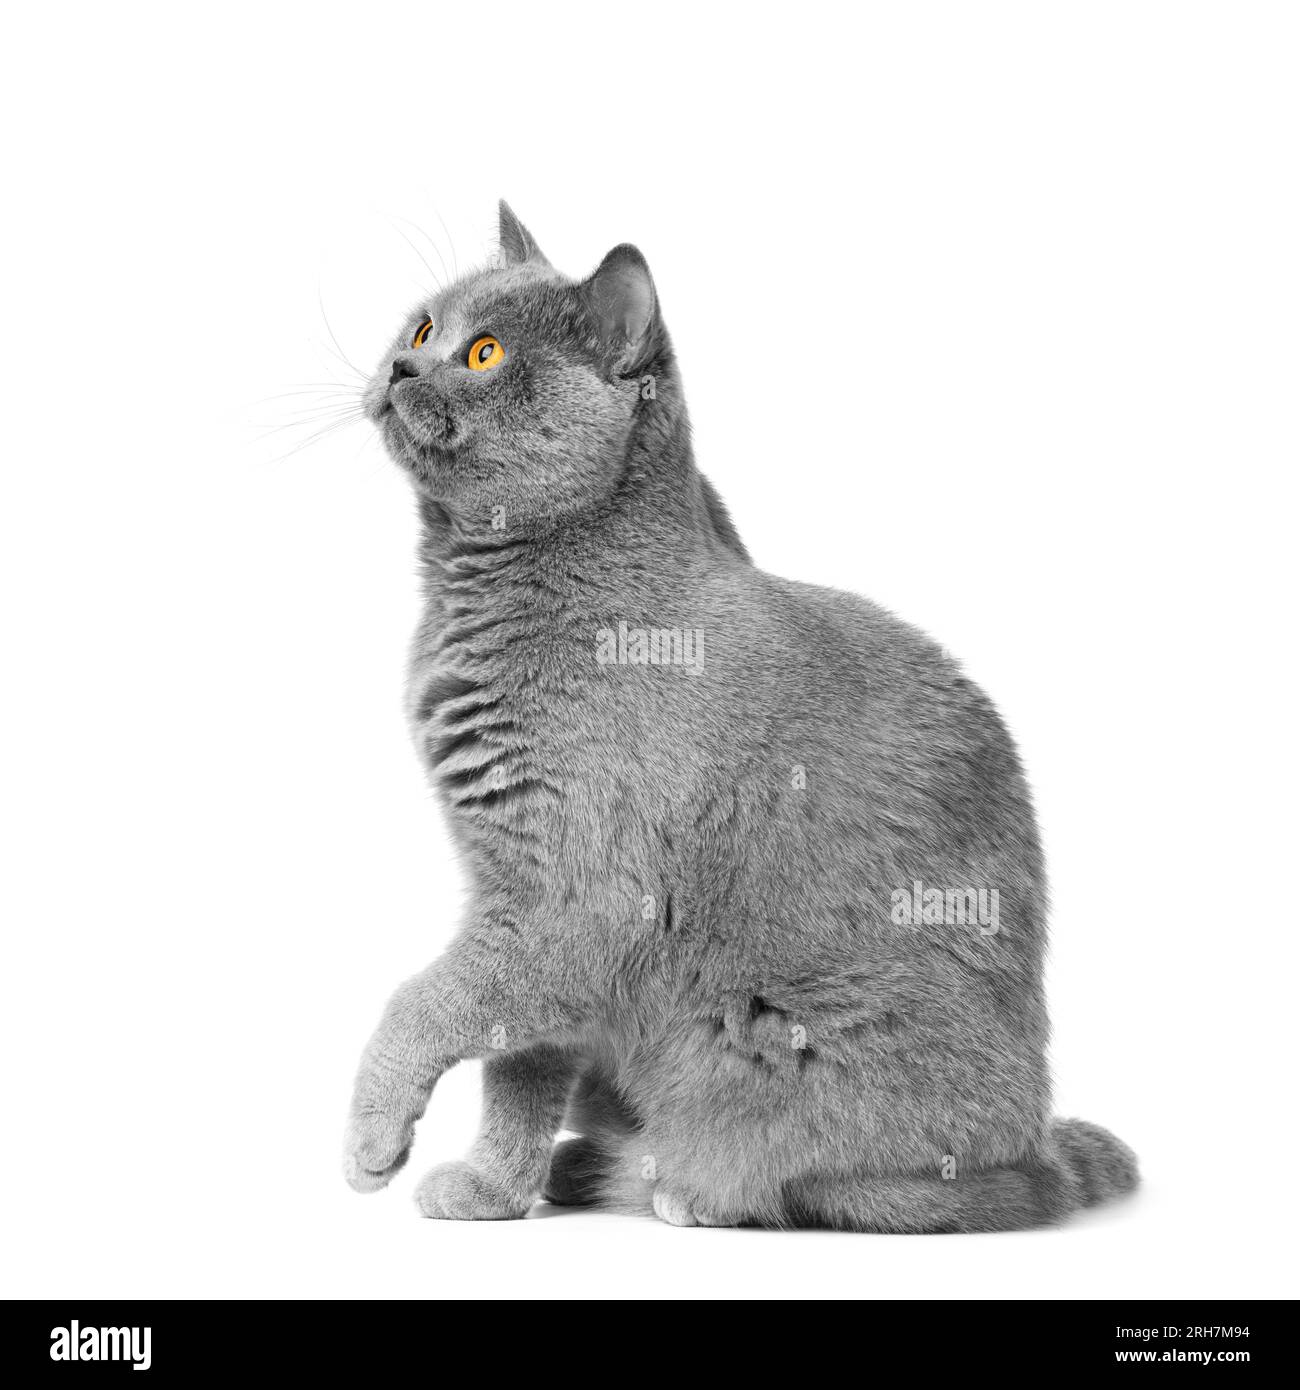 Die britische Kurzhaar-blaue Katze sitzt auf weißem Hintergrund, Pfote hoch. Banner, Werbung für Lebensmittel, Leckereien für Katzen. Stockfoto